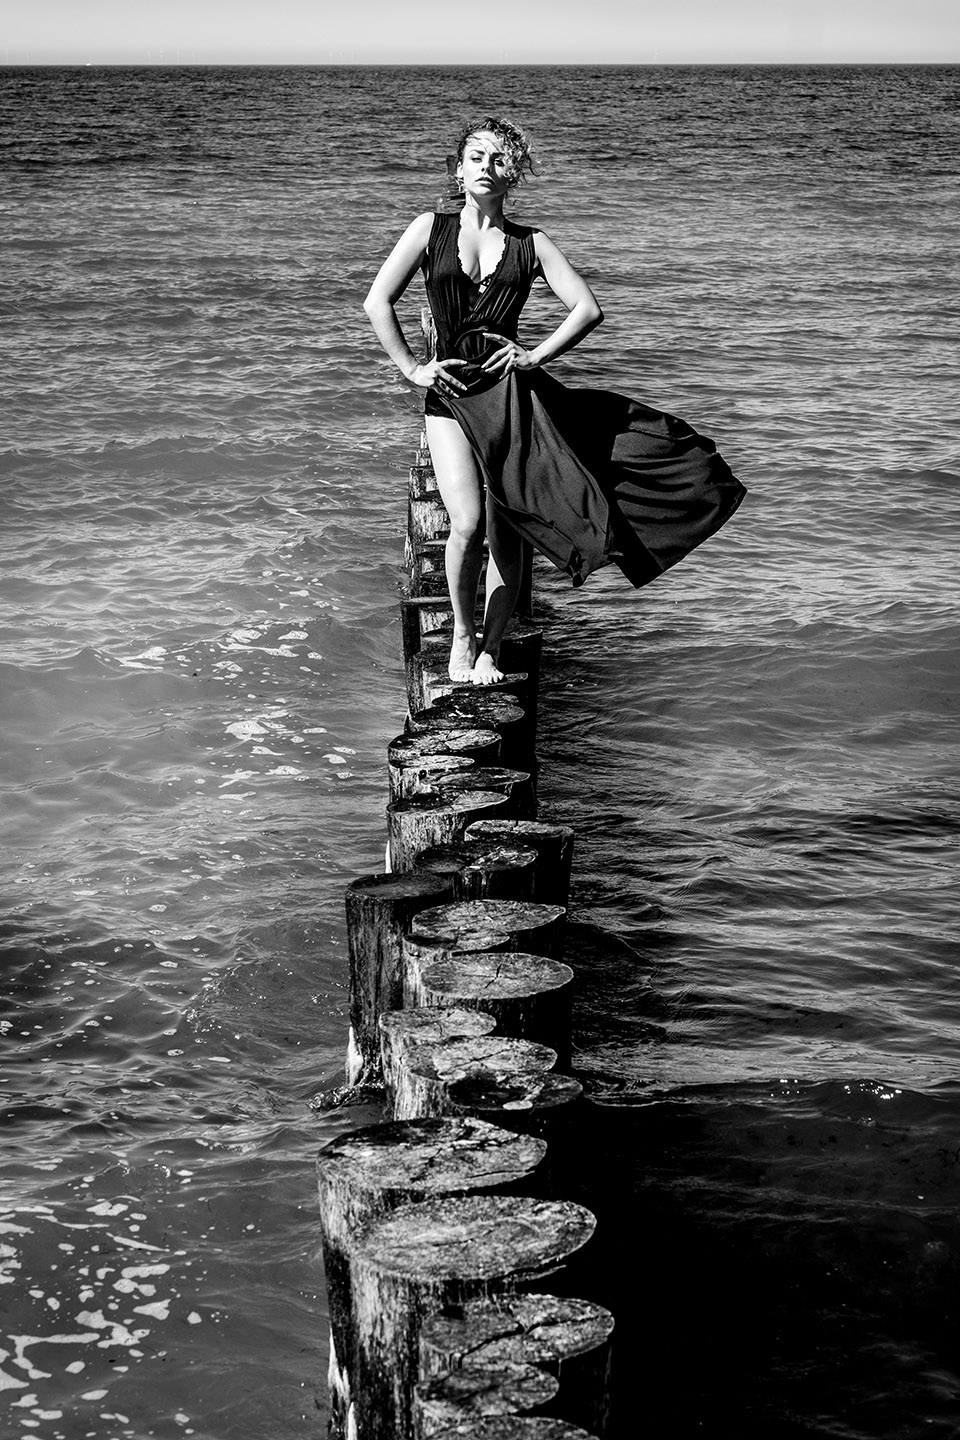 Schwarz-weiß Aufnahme einer Frau mit blonden Locken und langem schwarzen Kleid, die auf Wellenbrechern im Meer in Richtung Kamera läuft